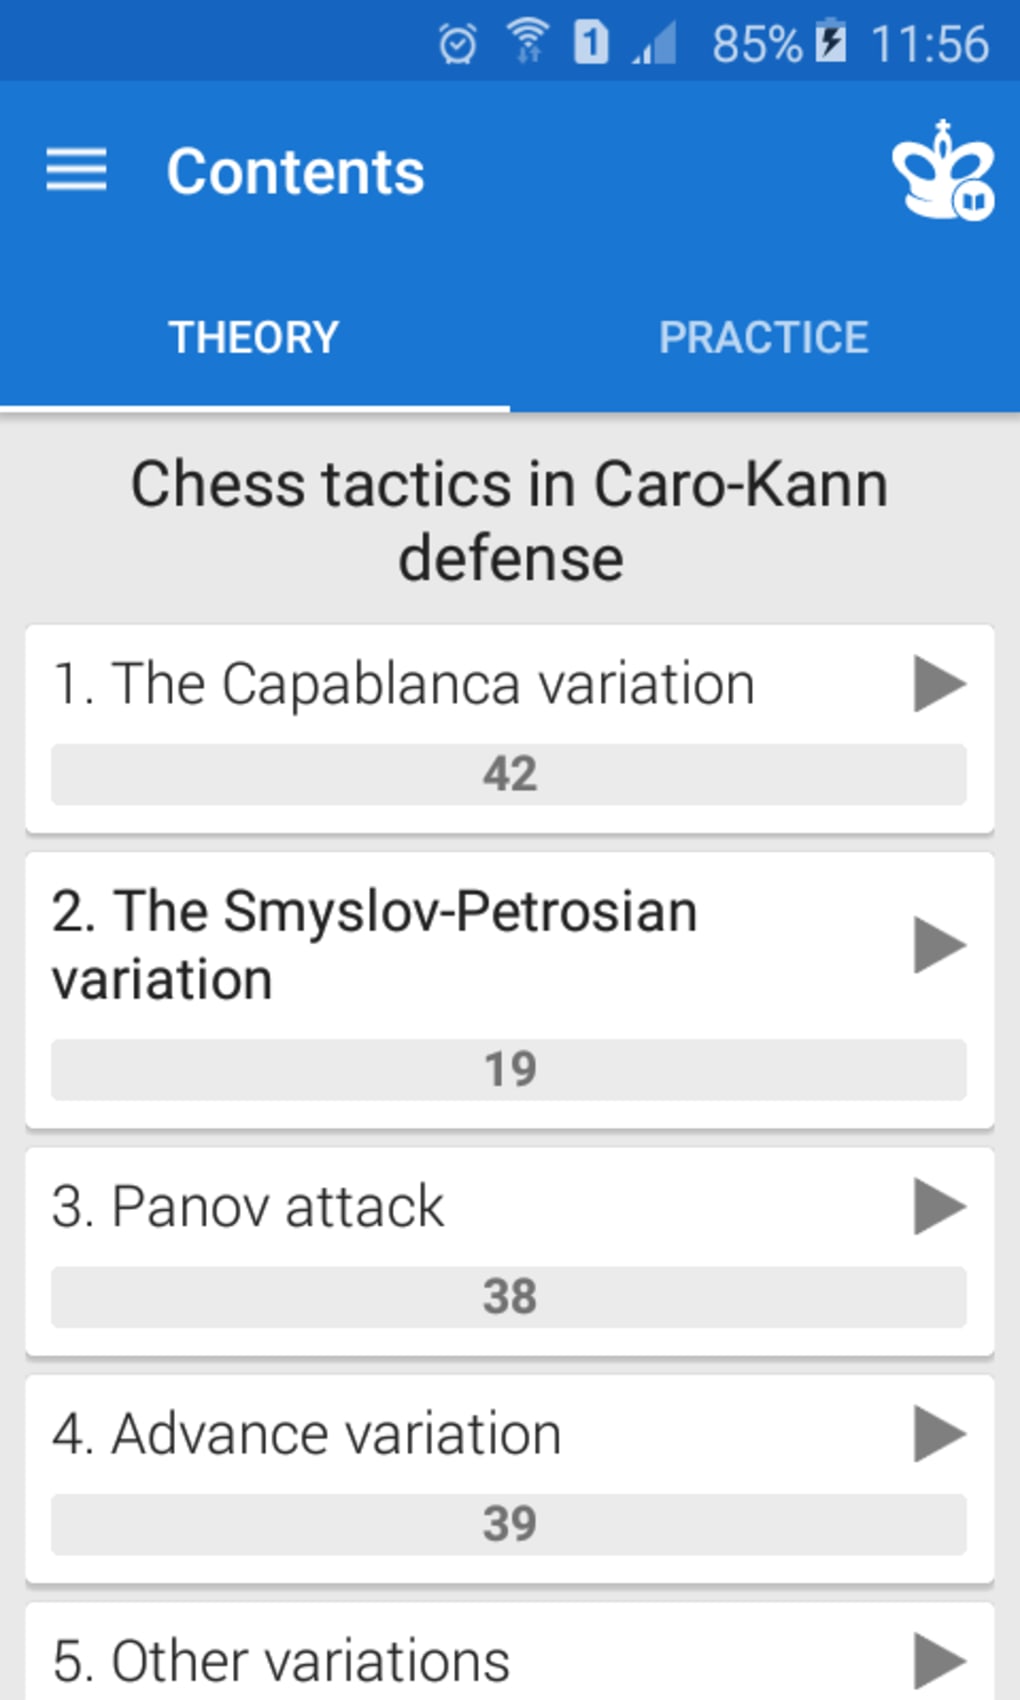 Download do APK de Xadrez - Clássico Caro-Kann para Android